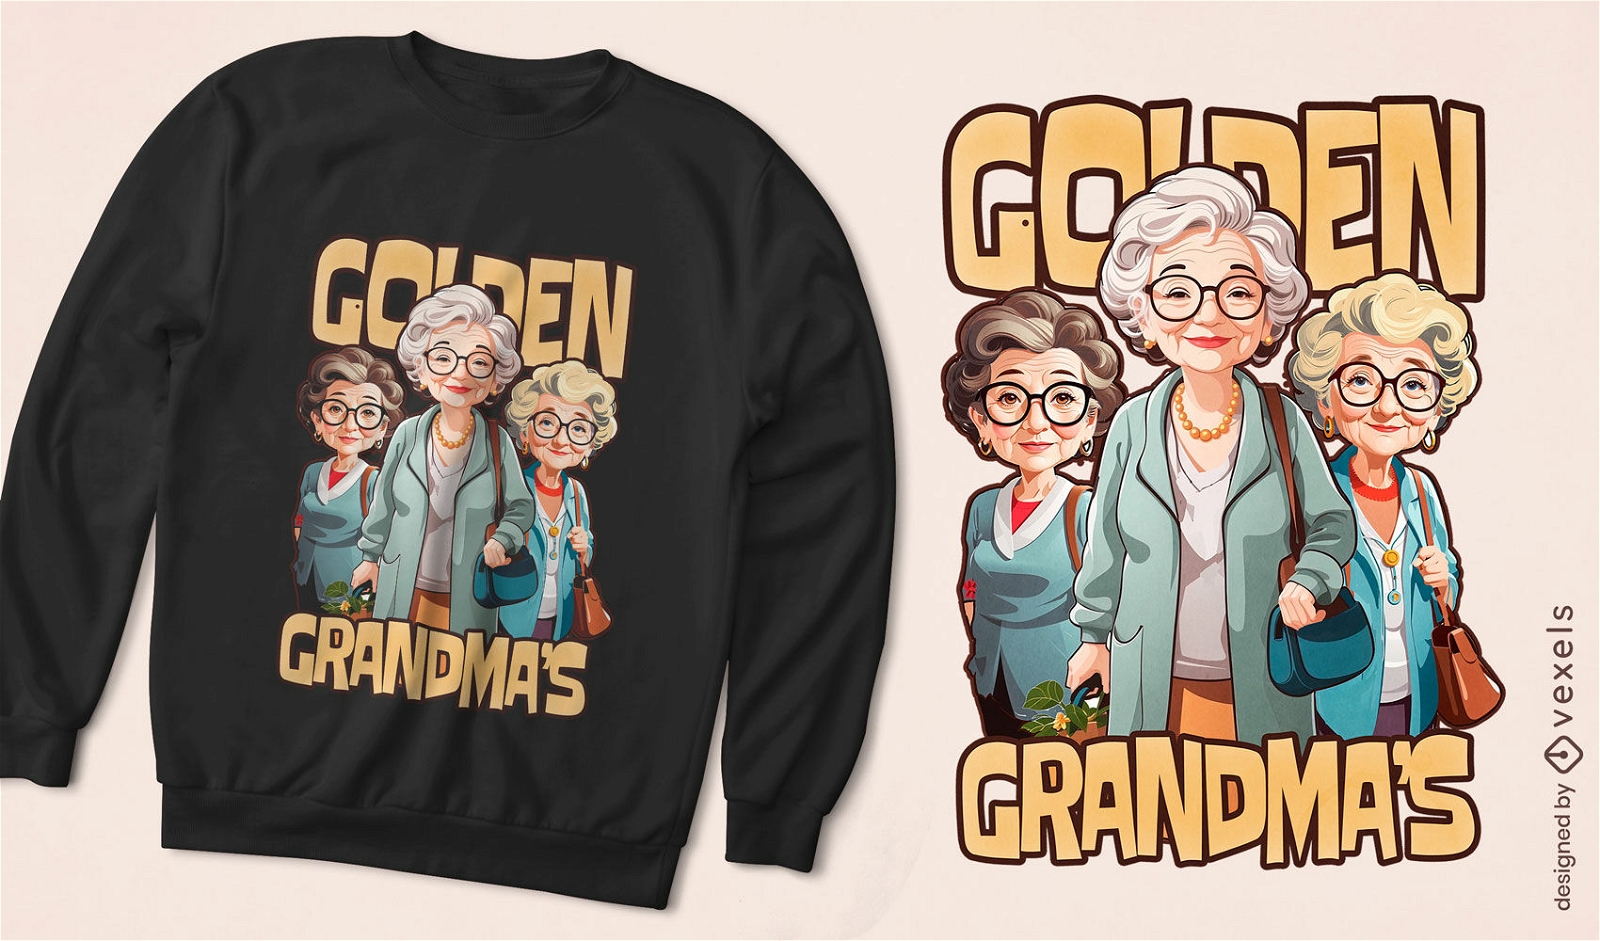 Golden grandmas t-shirt design